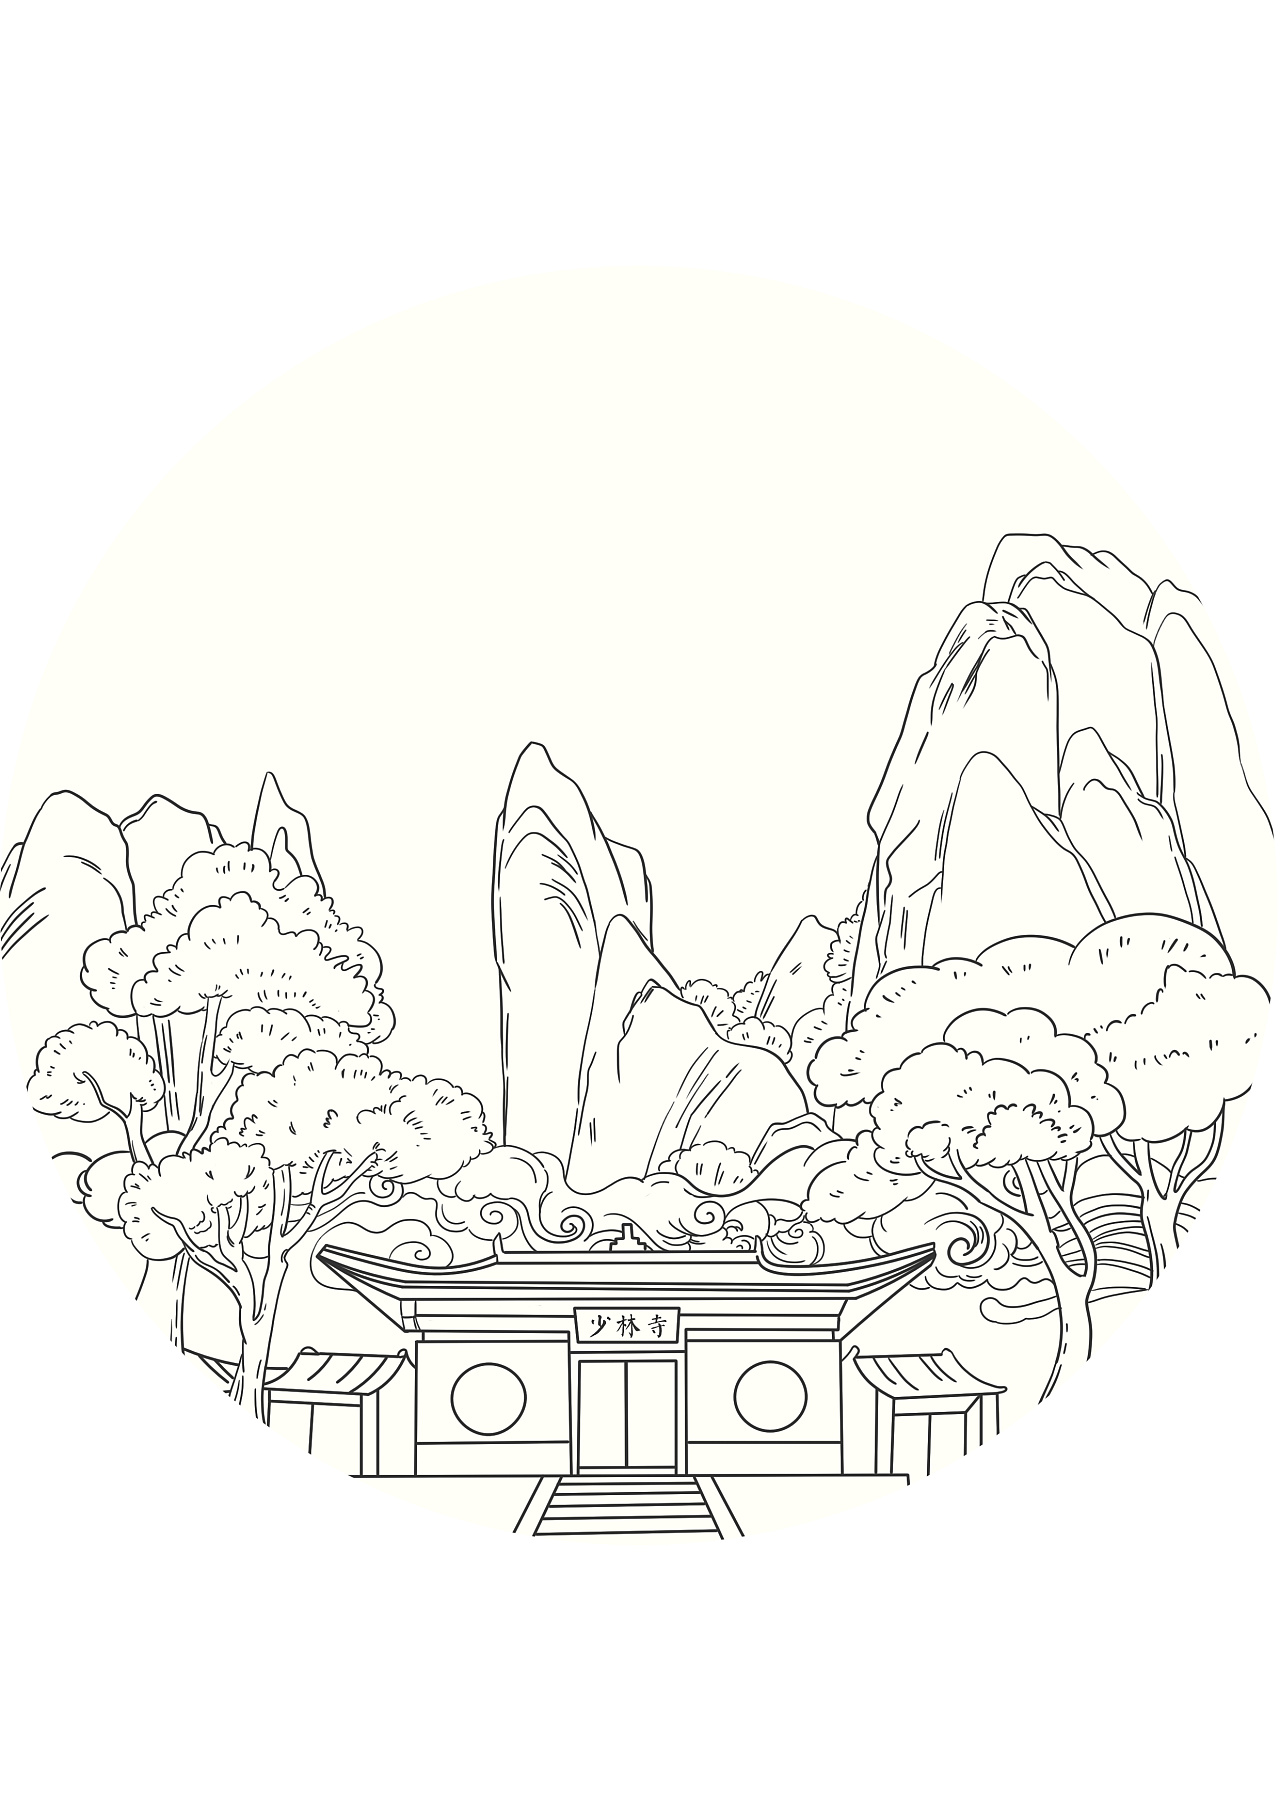 少林寺怎么画 简单图片